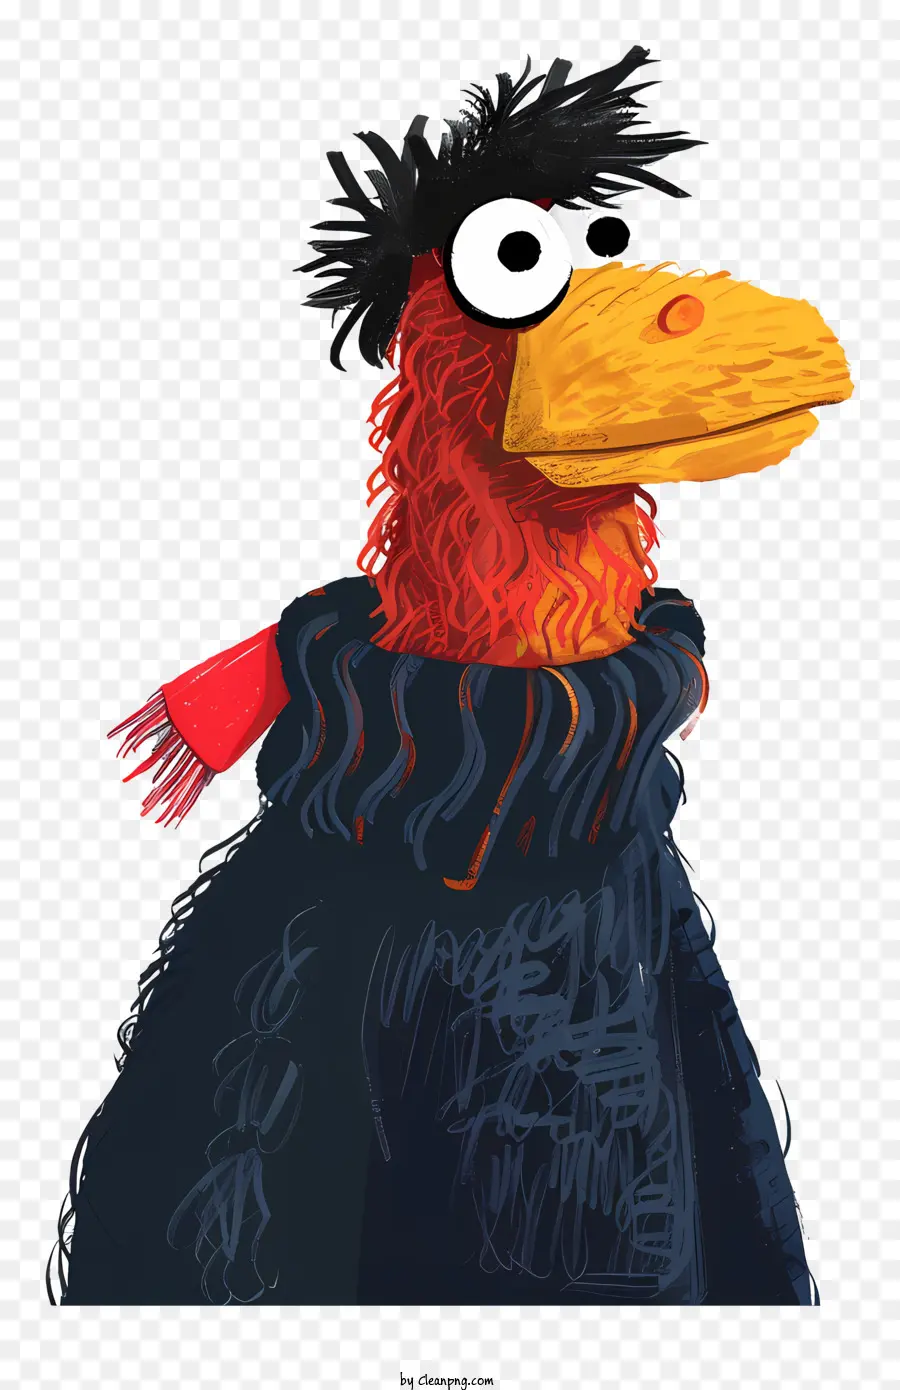 phim hoạt hình con chim - Chim màu cam với mũ đen và khăn quàng cổ